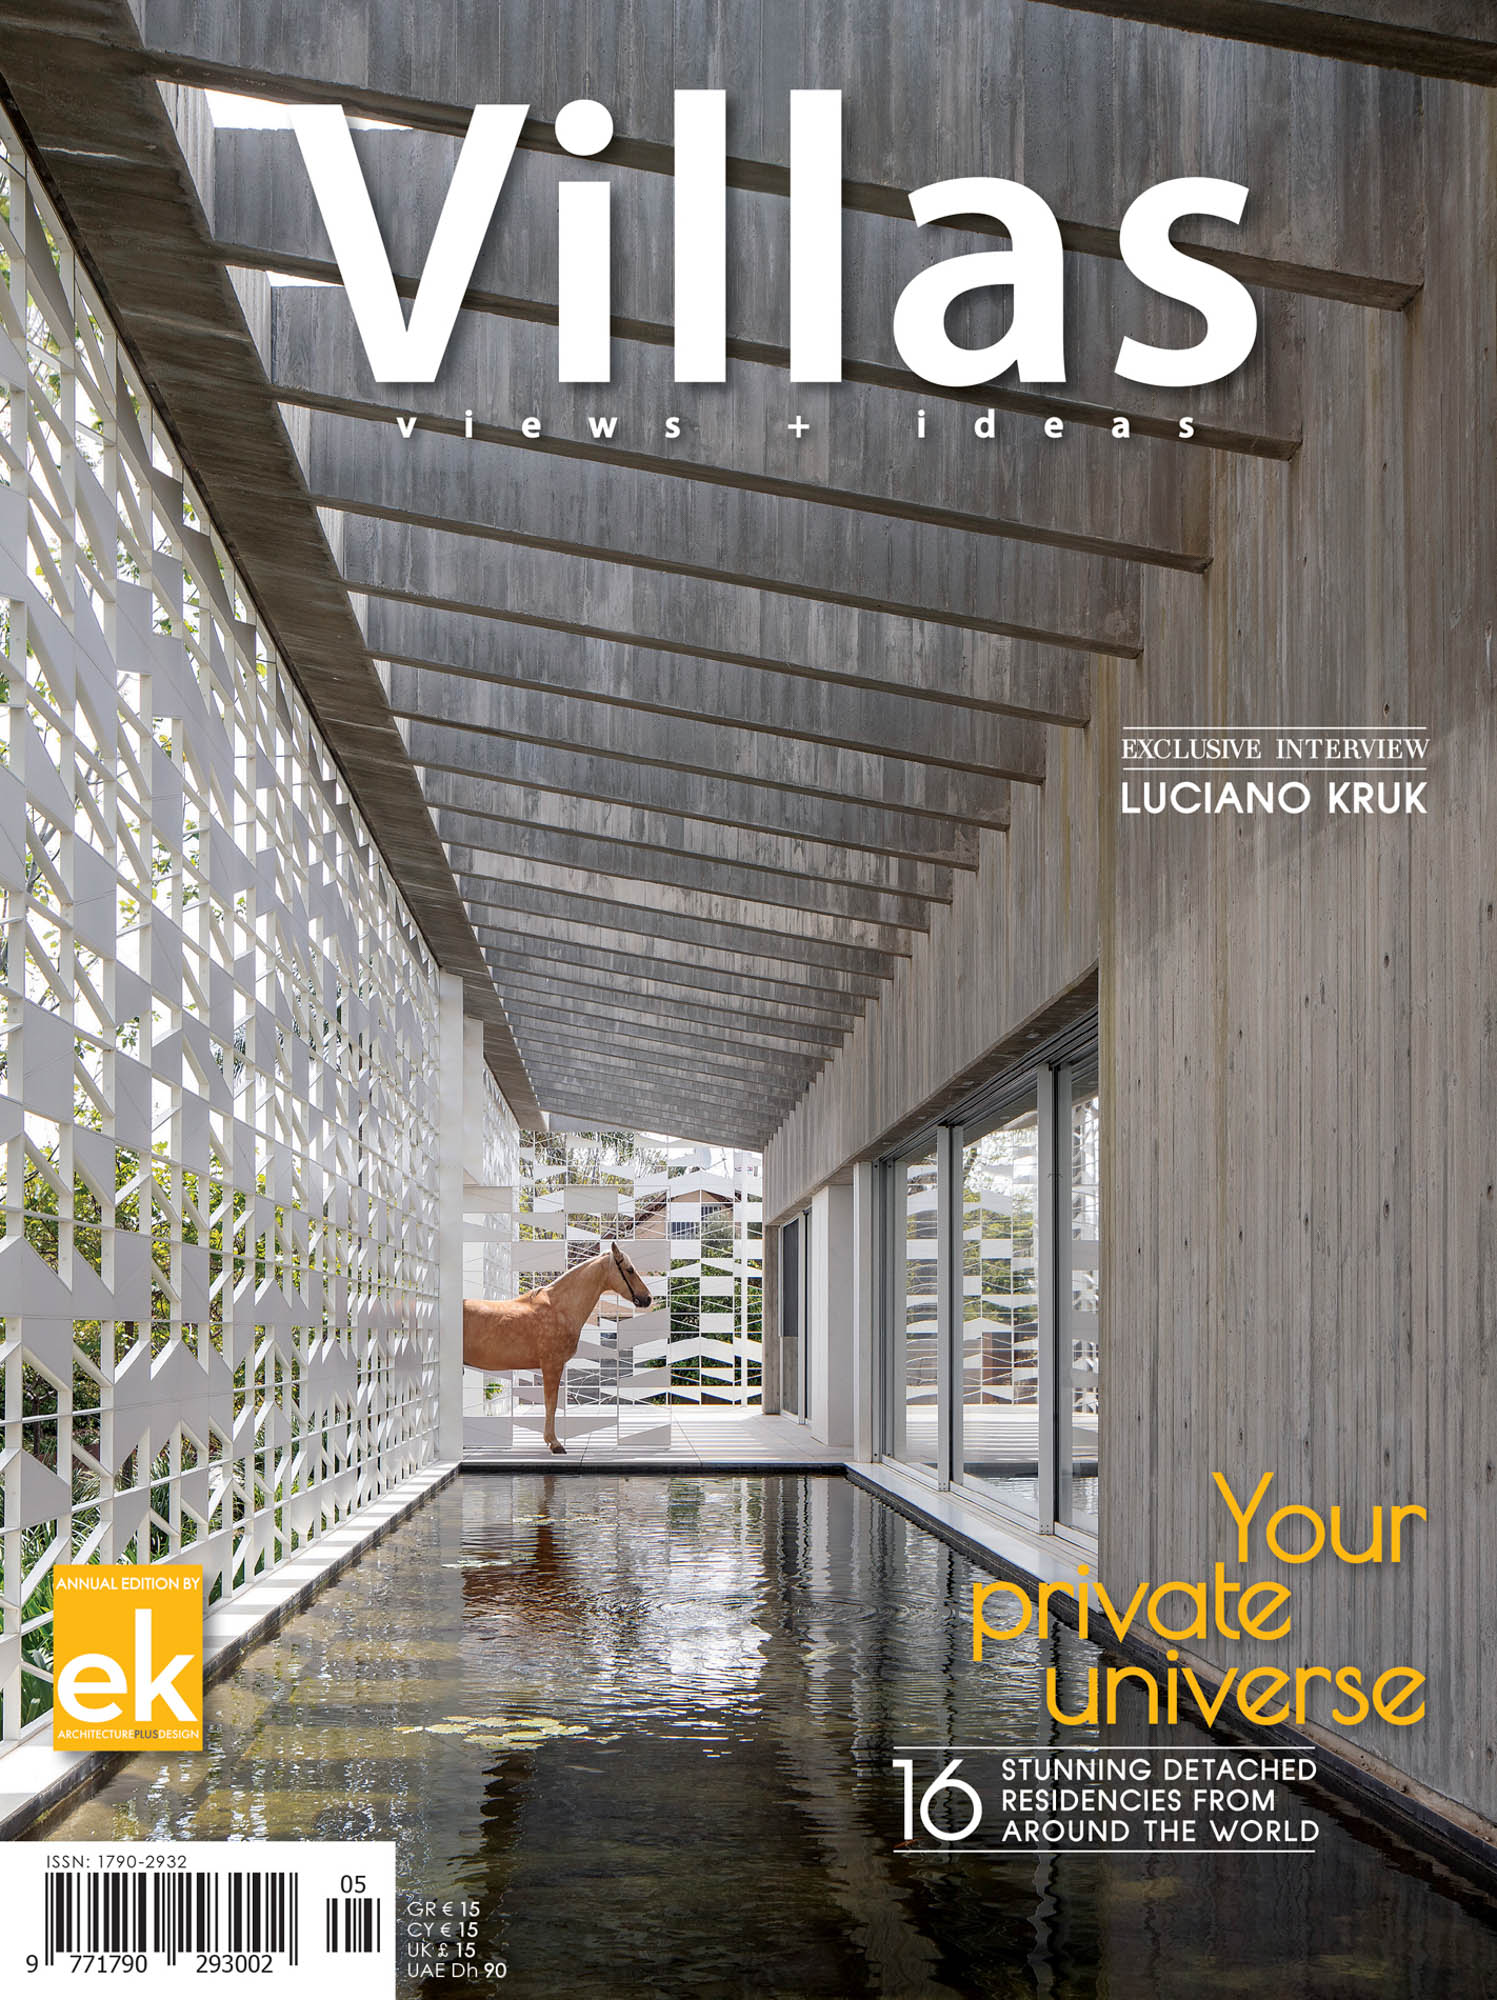 Casa A do REM'A Arquitectos na revista Villas da Ek com fotografia de arquitectura Ivo Tavares Studio